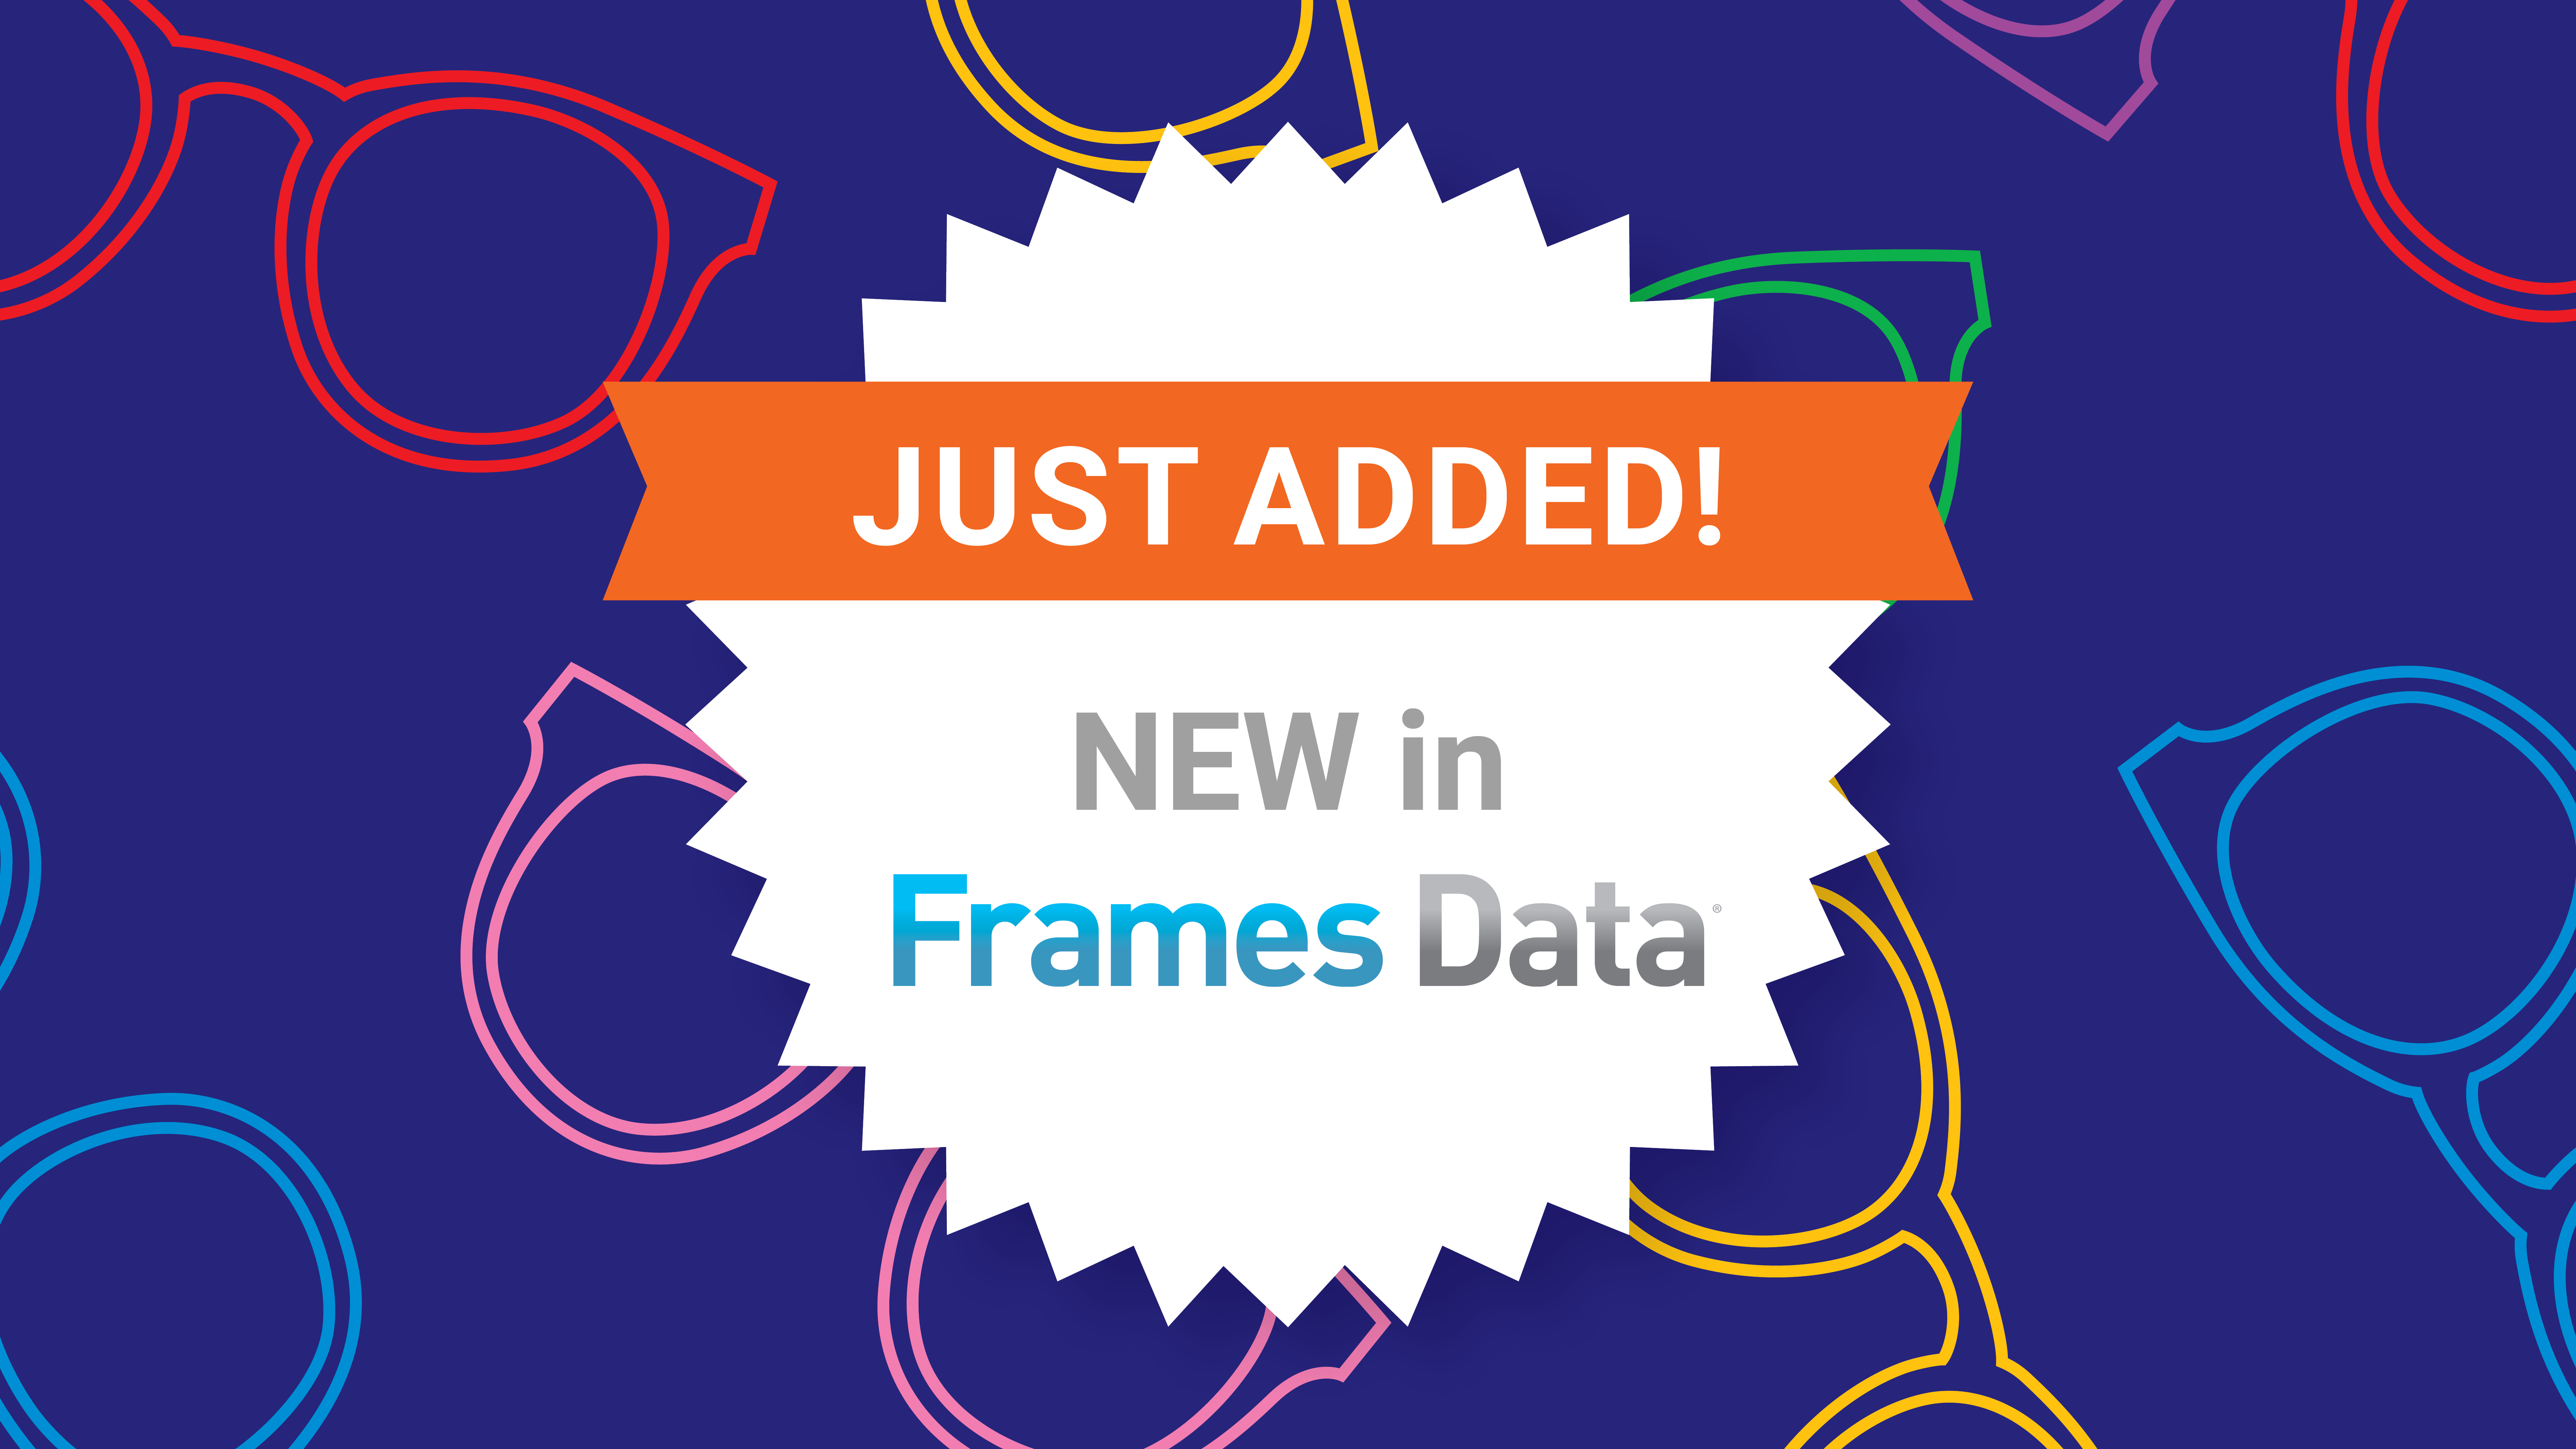 New in Frames Data